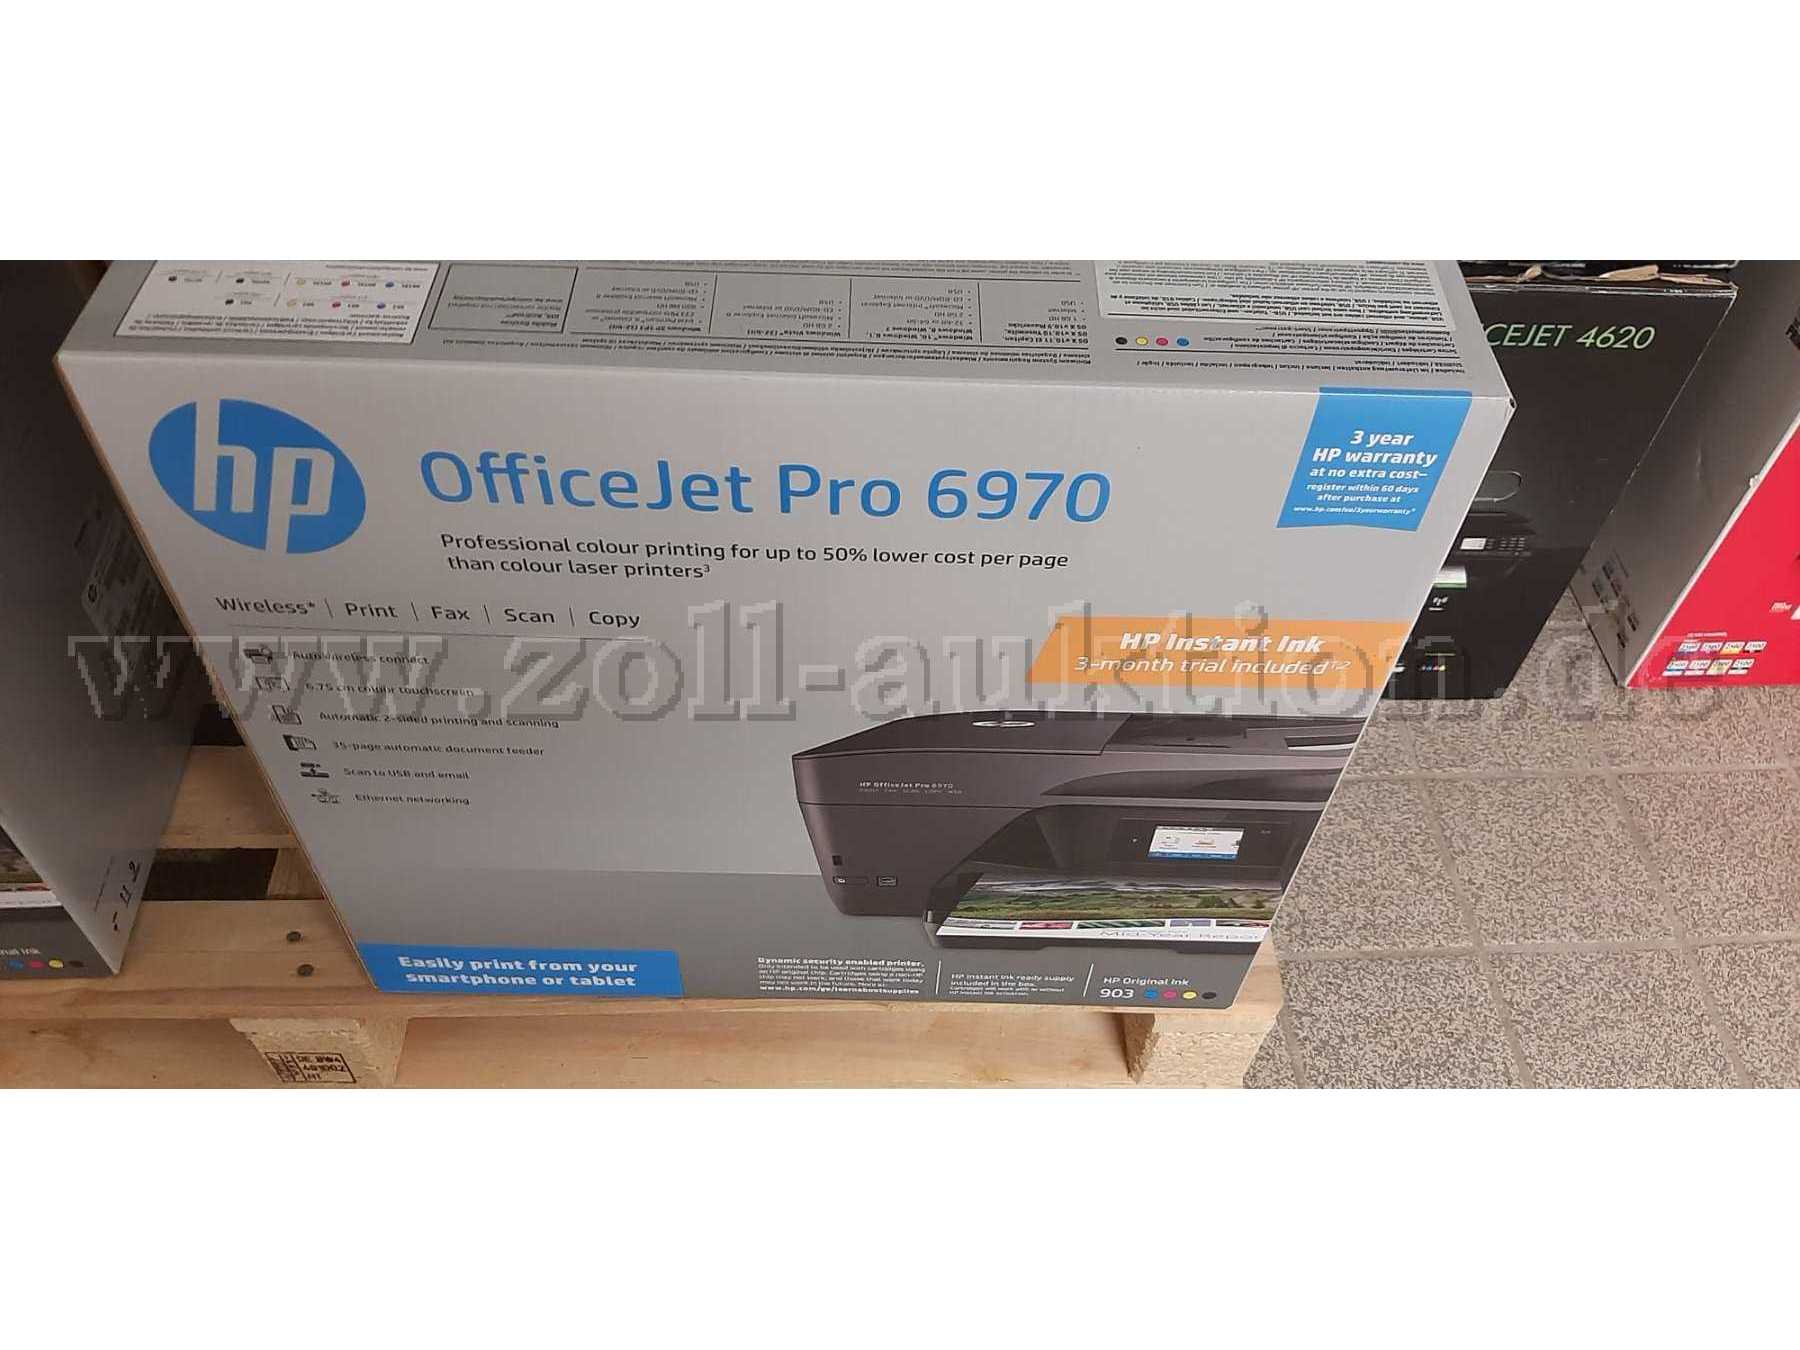 Beispieldarstellung: HP OfficeJet Pro 6970 im Karton